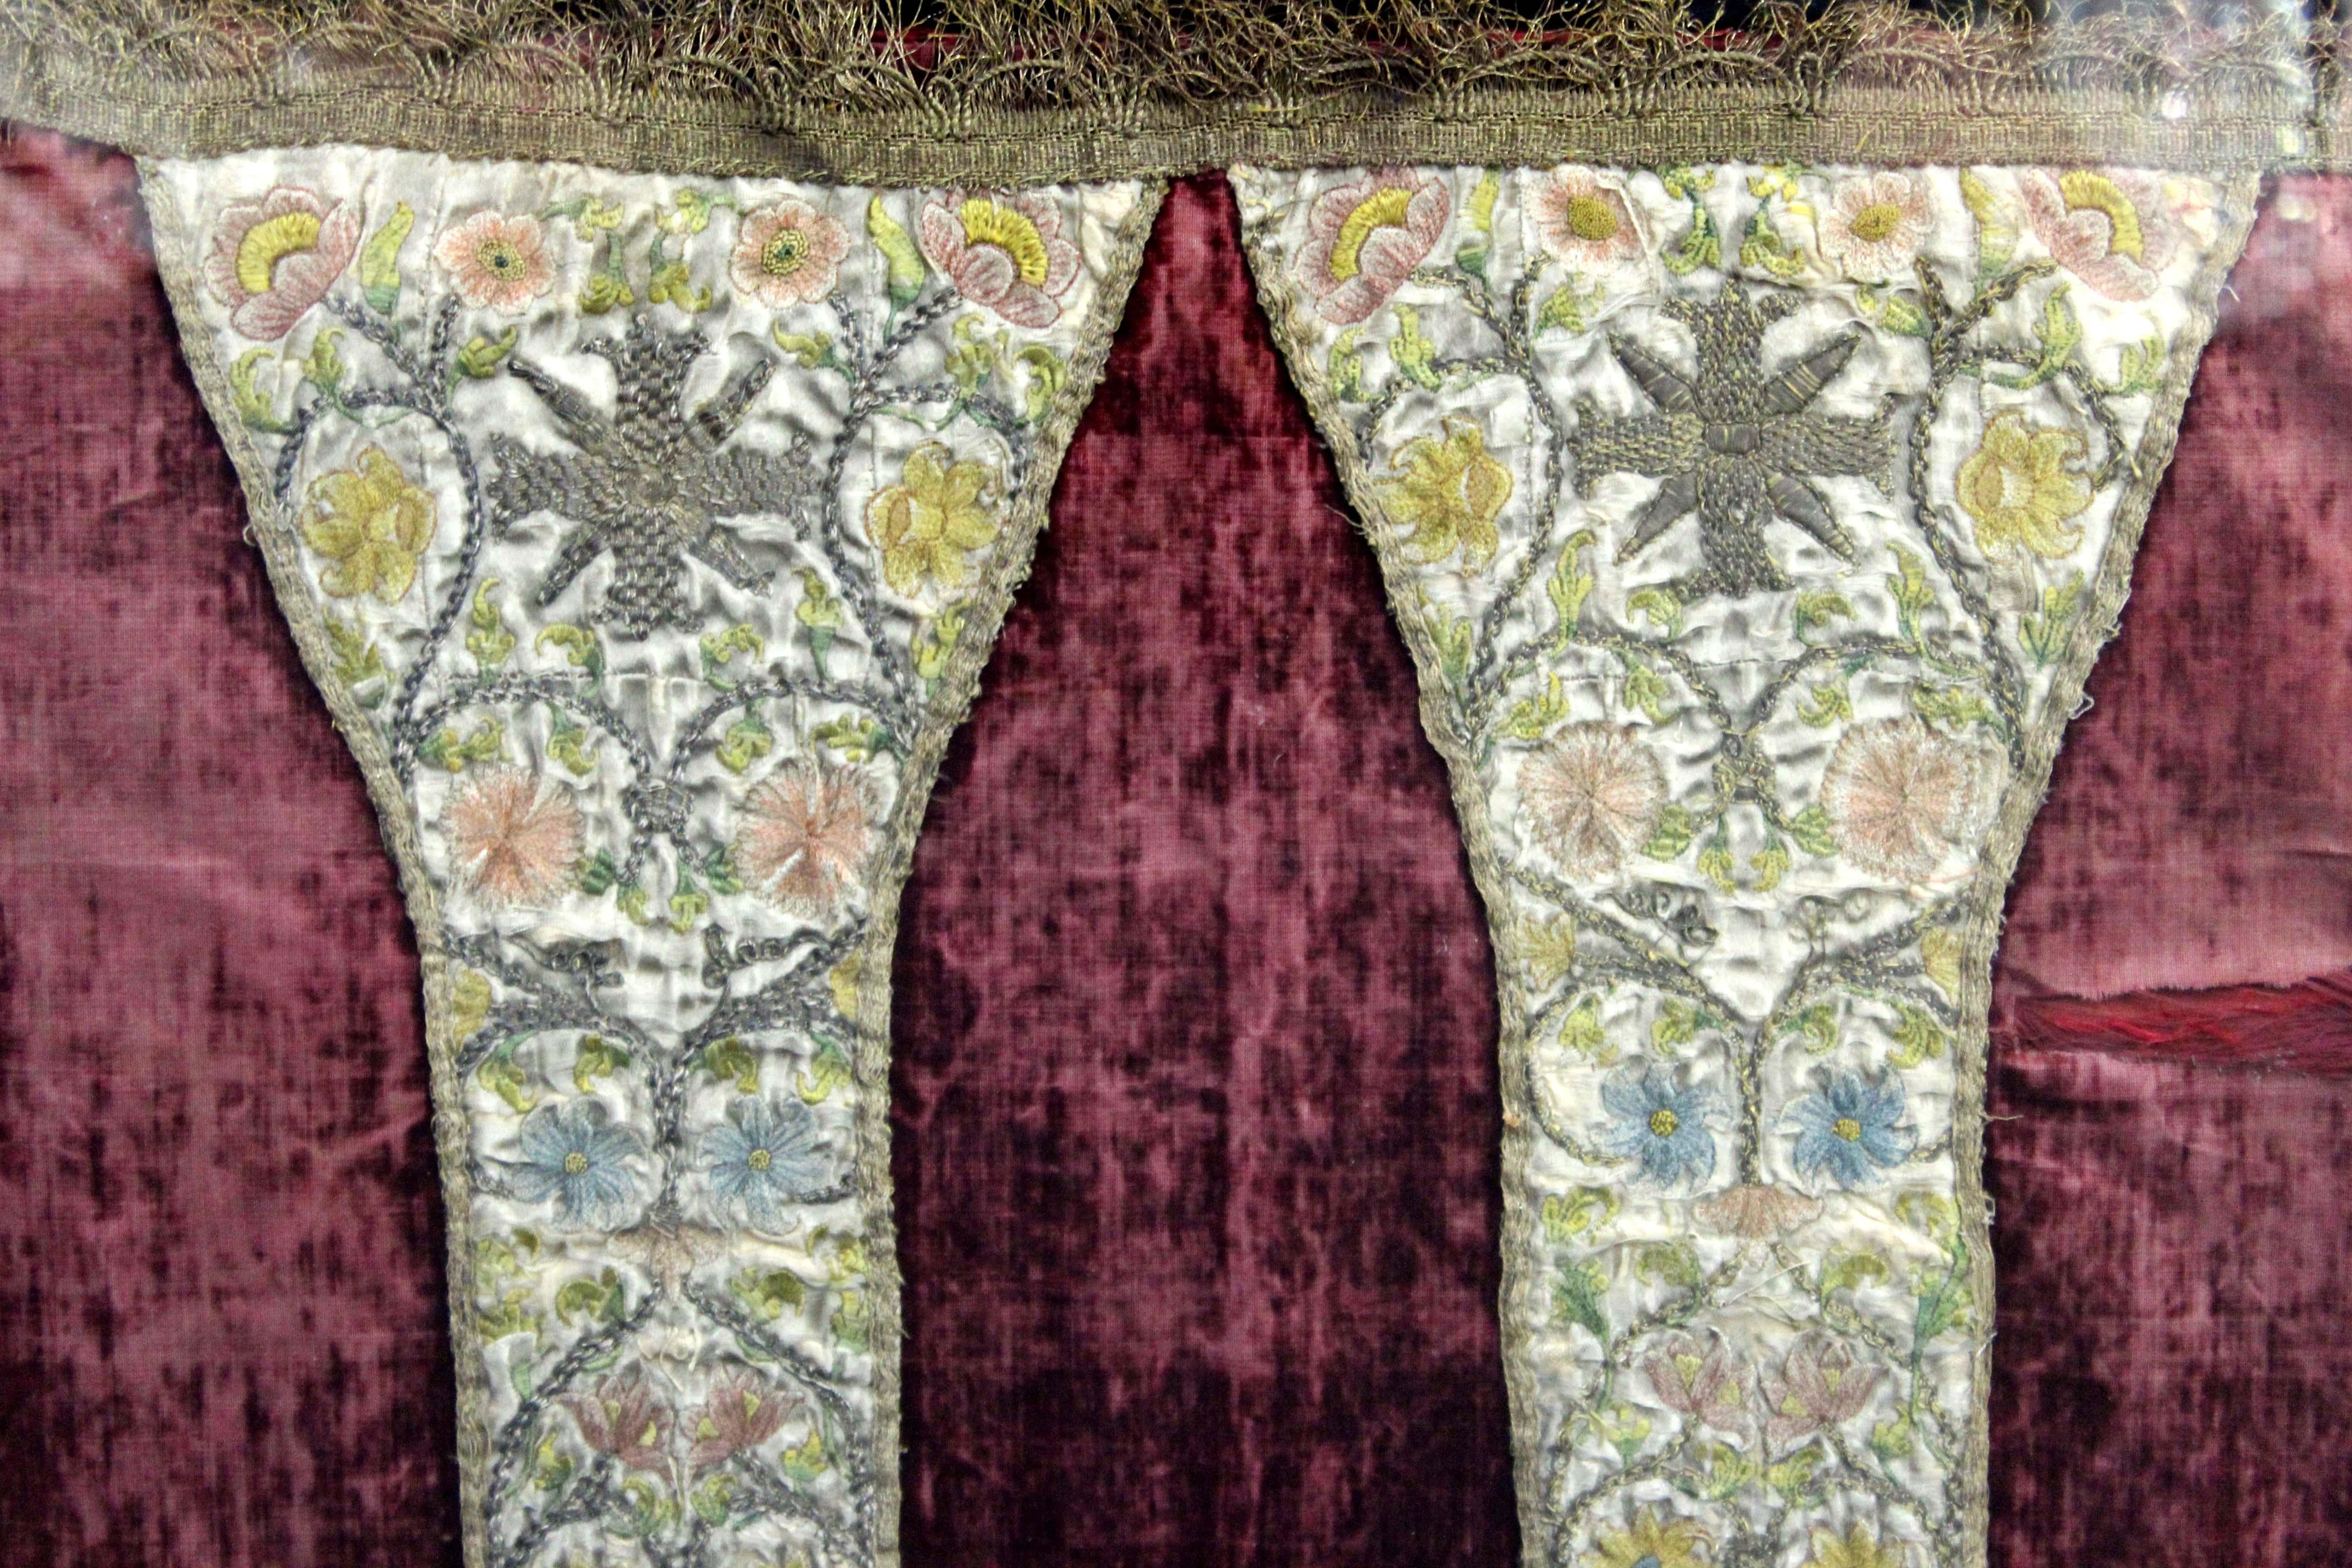 Antike bestickte Textilkasel mit floralen Ziermustern in Blau, Gelb und Rosa, wahrscheinlich im 17. bis 18. Jahrhundert in Europa hergestellt. Das Stück ist gerahmt und trägt auf der Rückseite eine Markierung, die darauf hinweist, dass es sich um